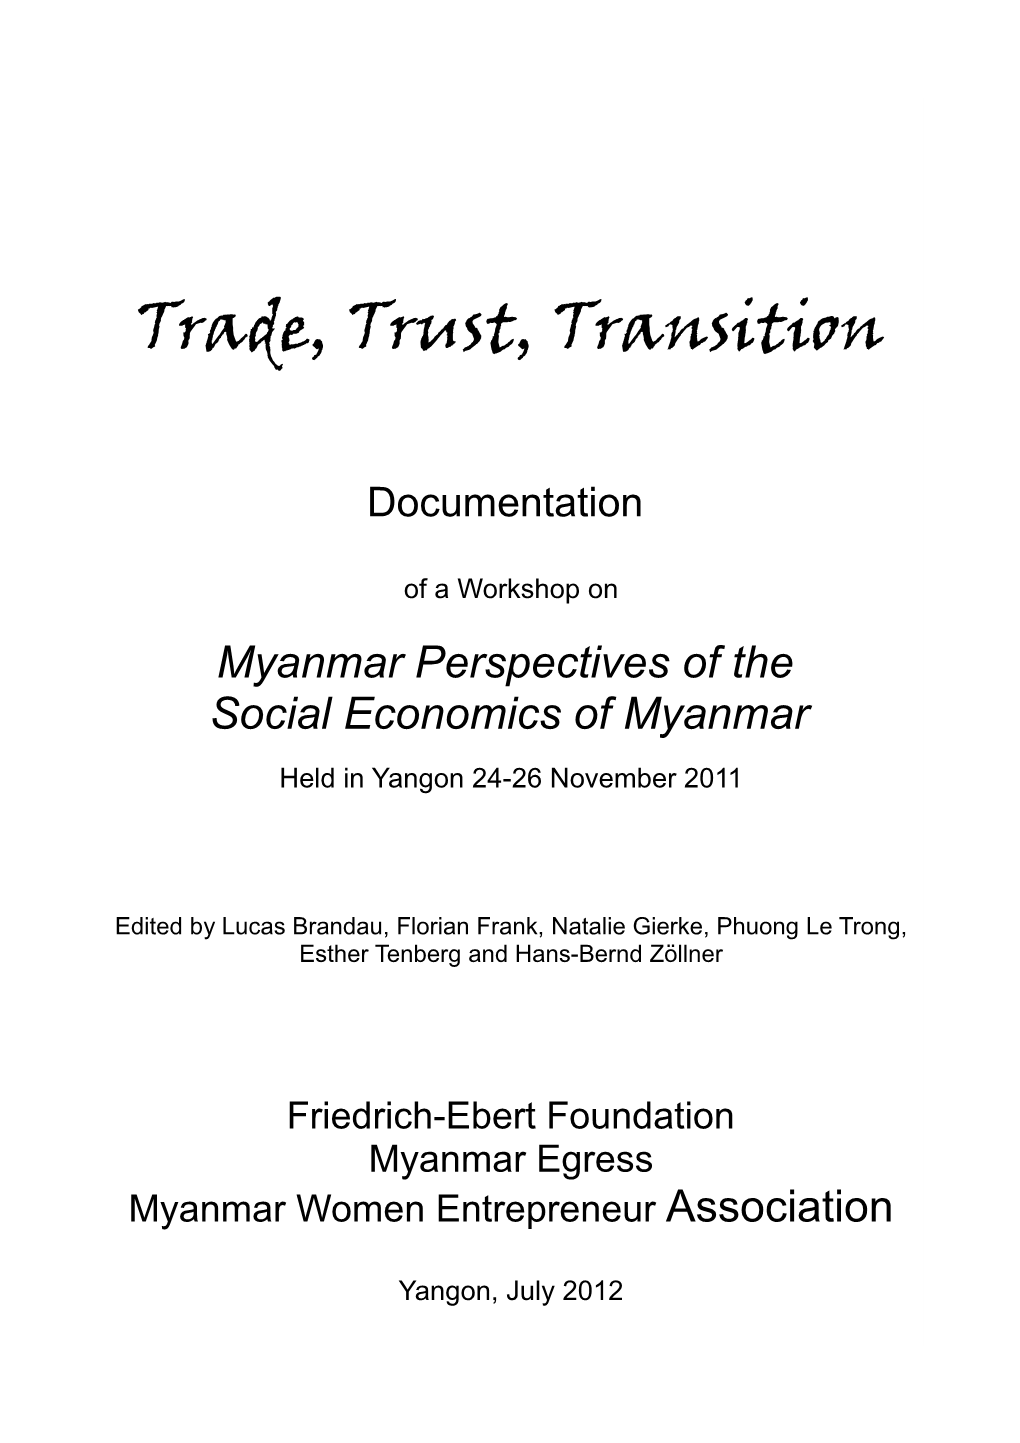 Trade, Trust, Transition